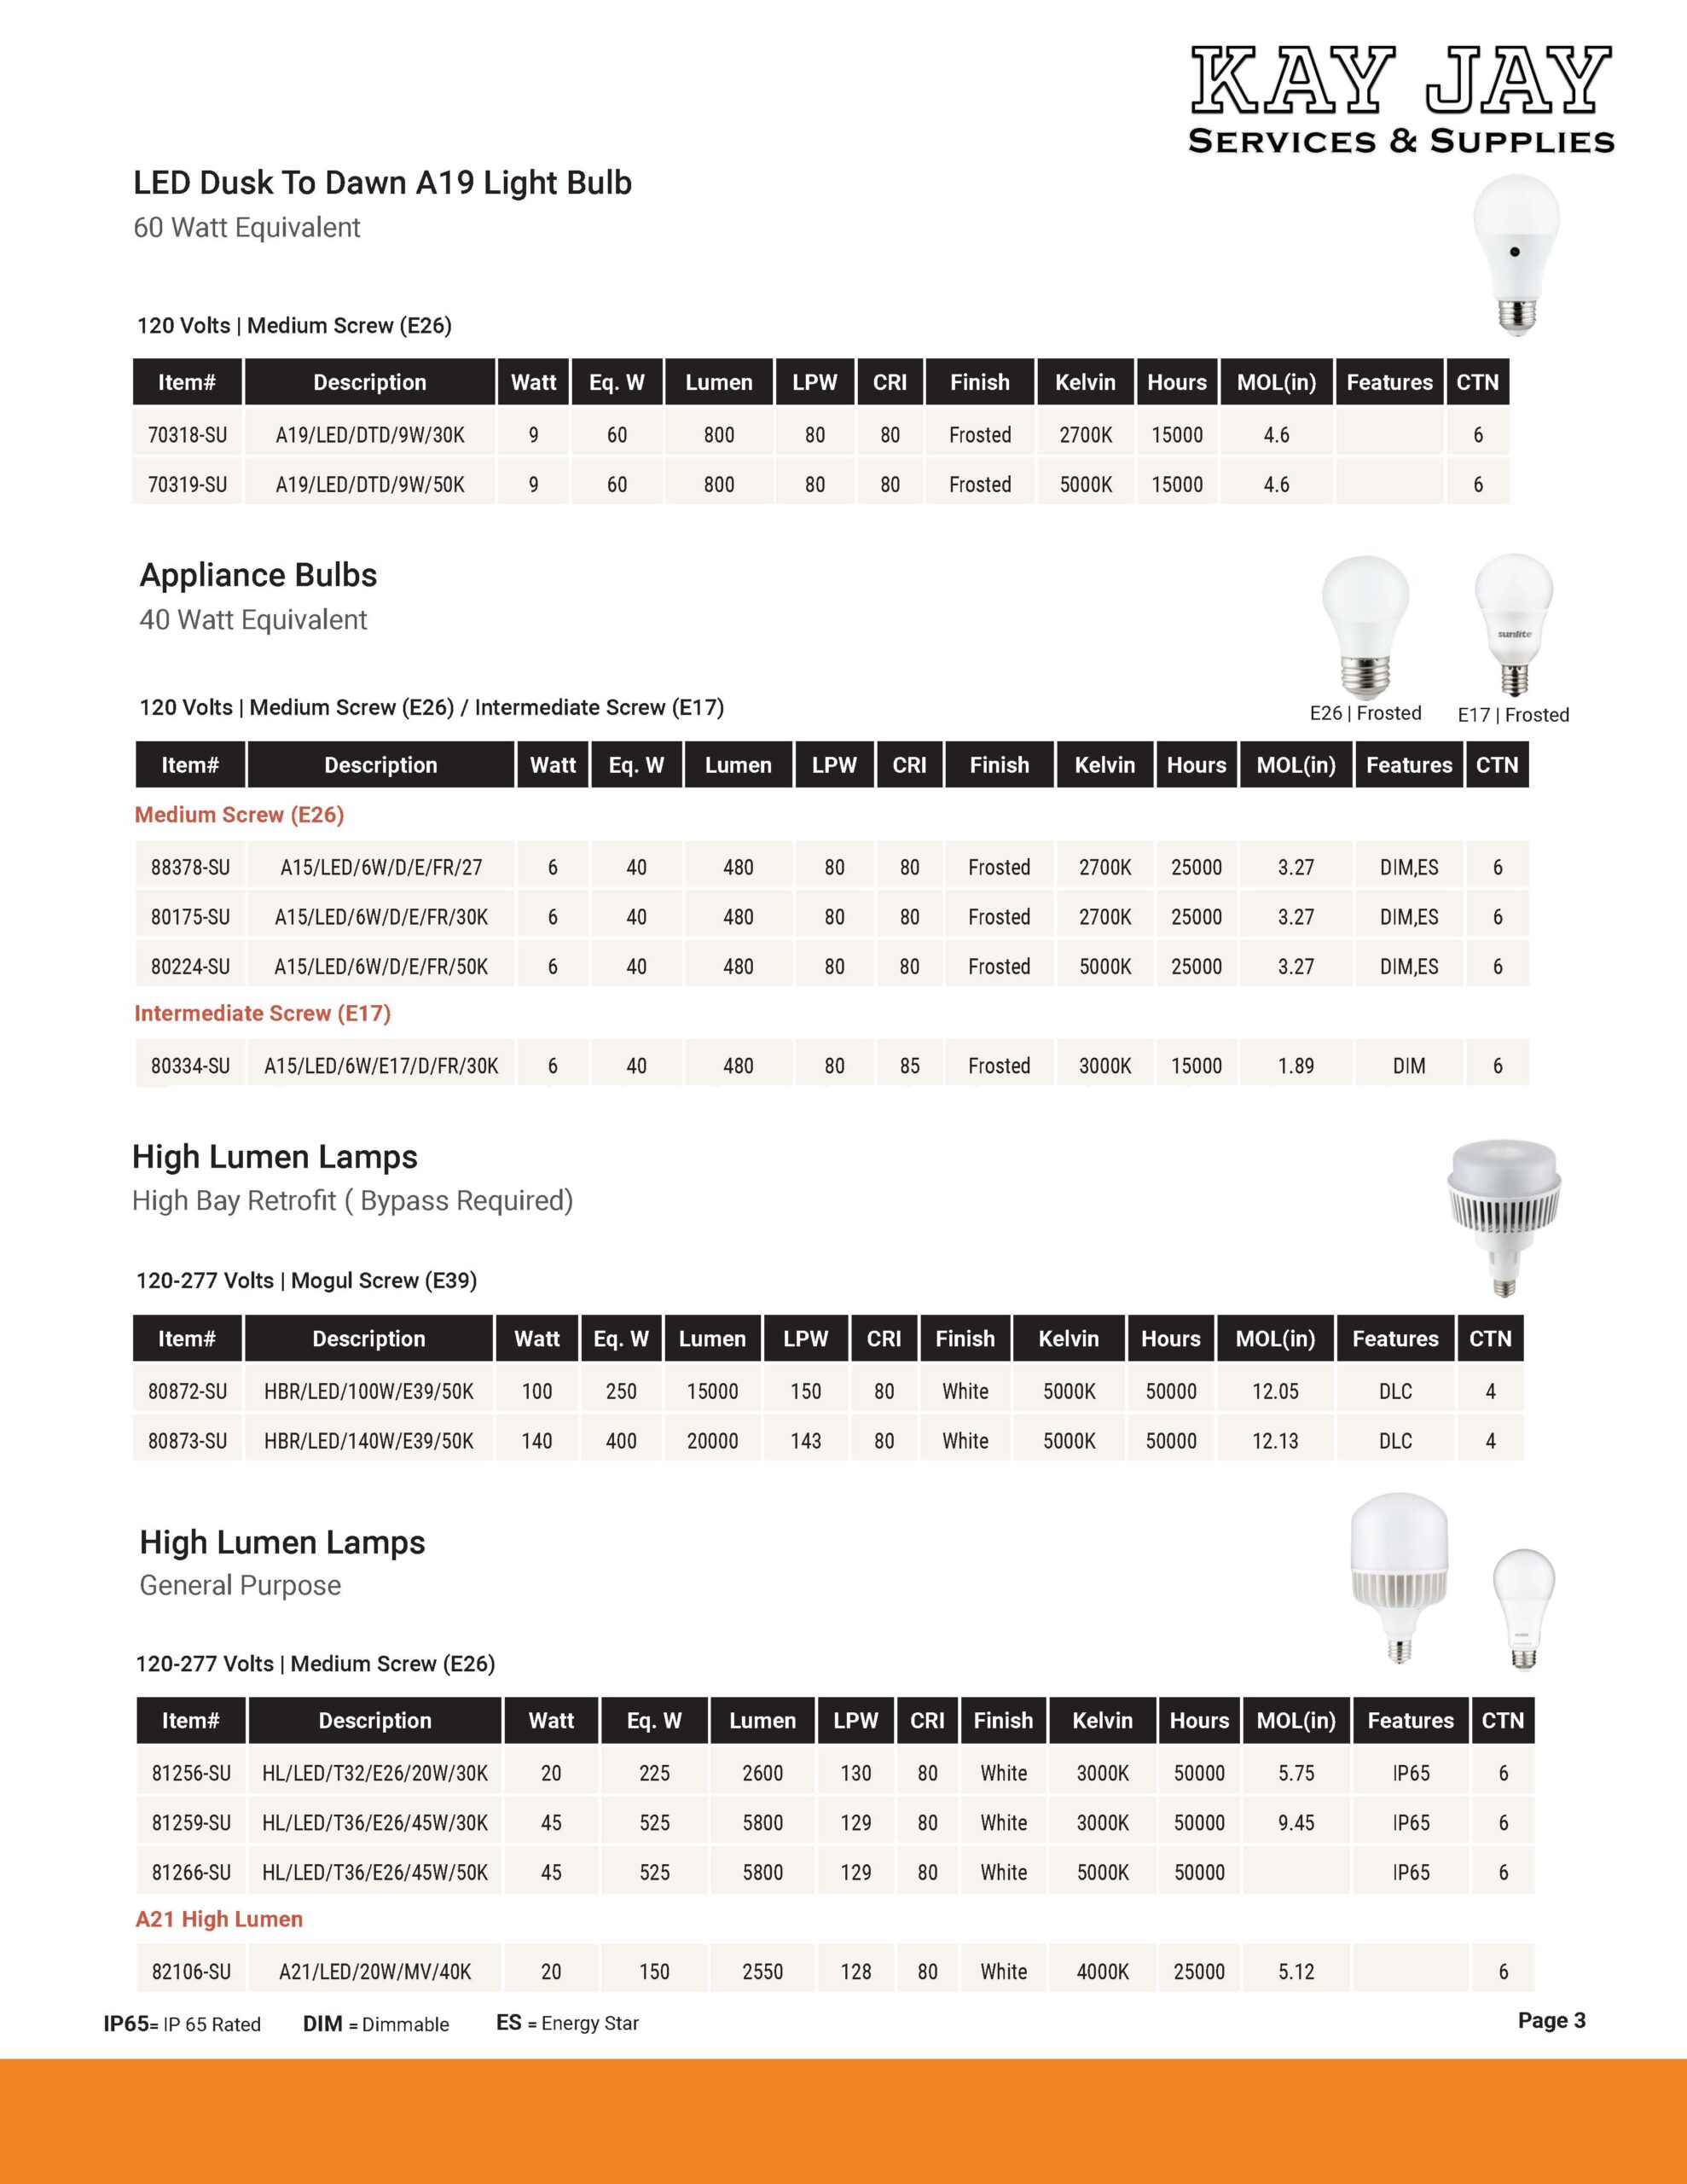 LED Dusk To Dawn A19 Light Bulb, 60 Watt Equivalent, 120 Volts | Medium Screw (E26) //Appliance Bulbs, 40 Watt Equivalent, 120 Volts | Medium Screw (E26) / Intermediate Screw (E17) // High Lumen Lamps, High Bay Retrofit ( Bypass Required) 120-277 Volts | Mogul Screw (E39)